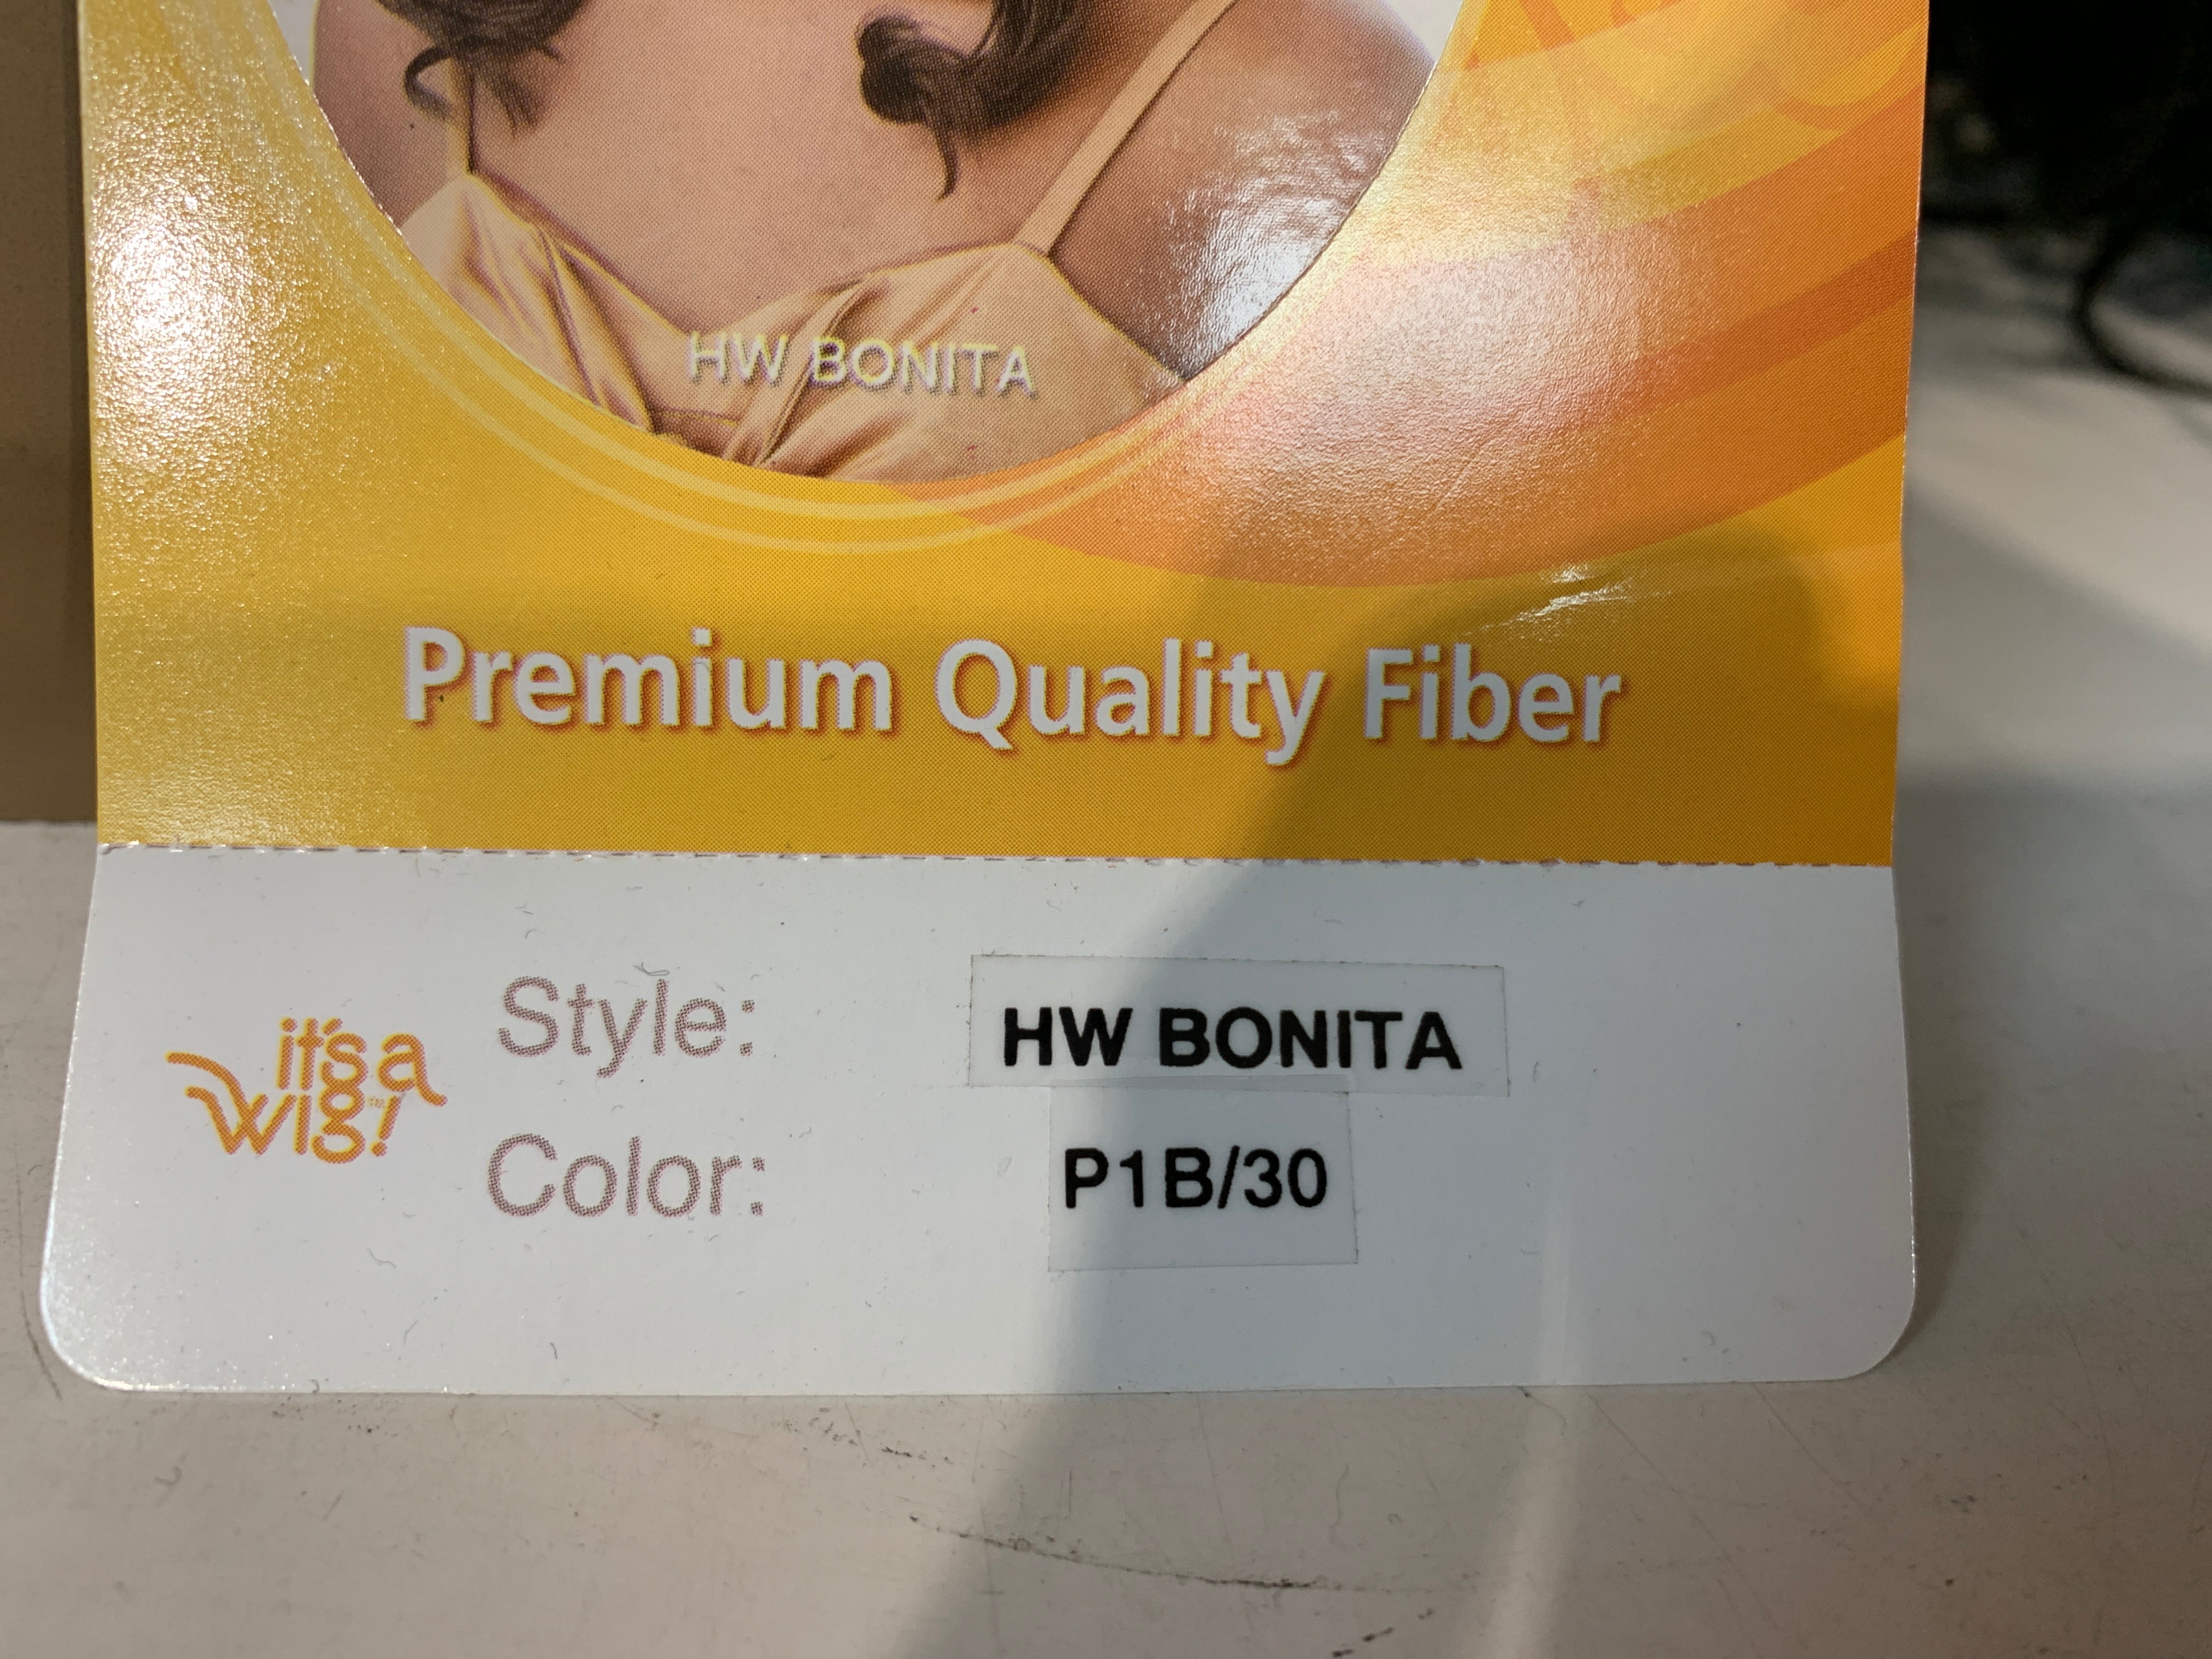 It’s a wig hw bonita